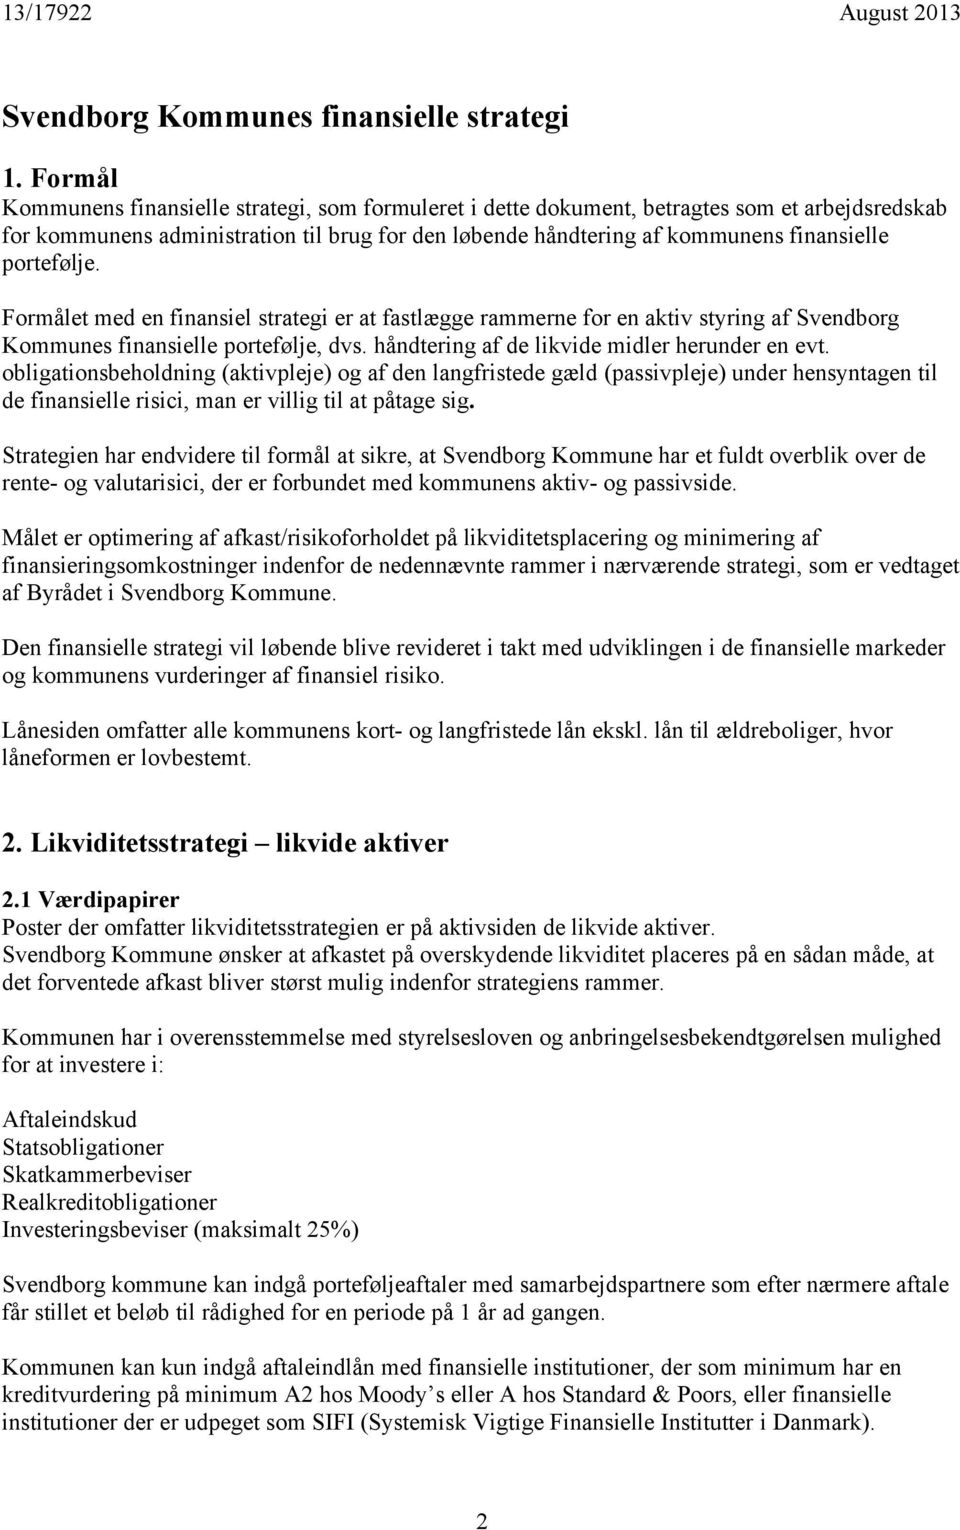 portefølje. Formålet med en finansiel strategi er at fastlægge rammerne for en aktiv styring af Svendborg Kommunes finansielle portefølje, dvs. håndtering af de likvide midler herunder en evt.